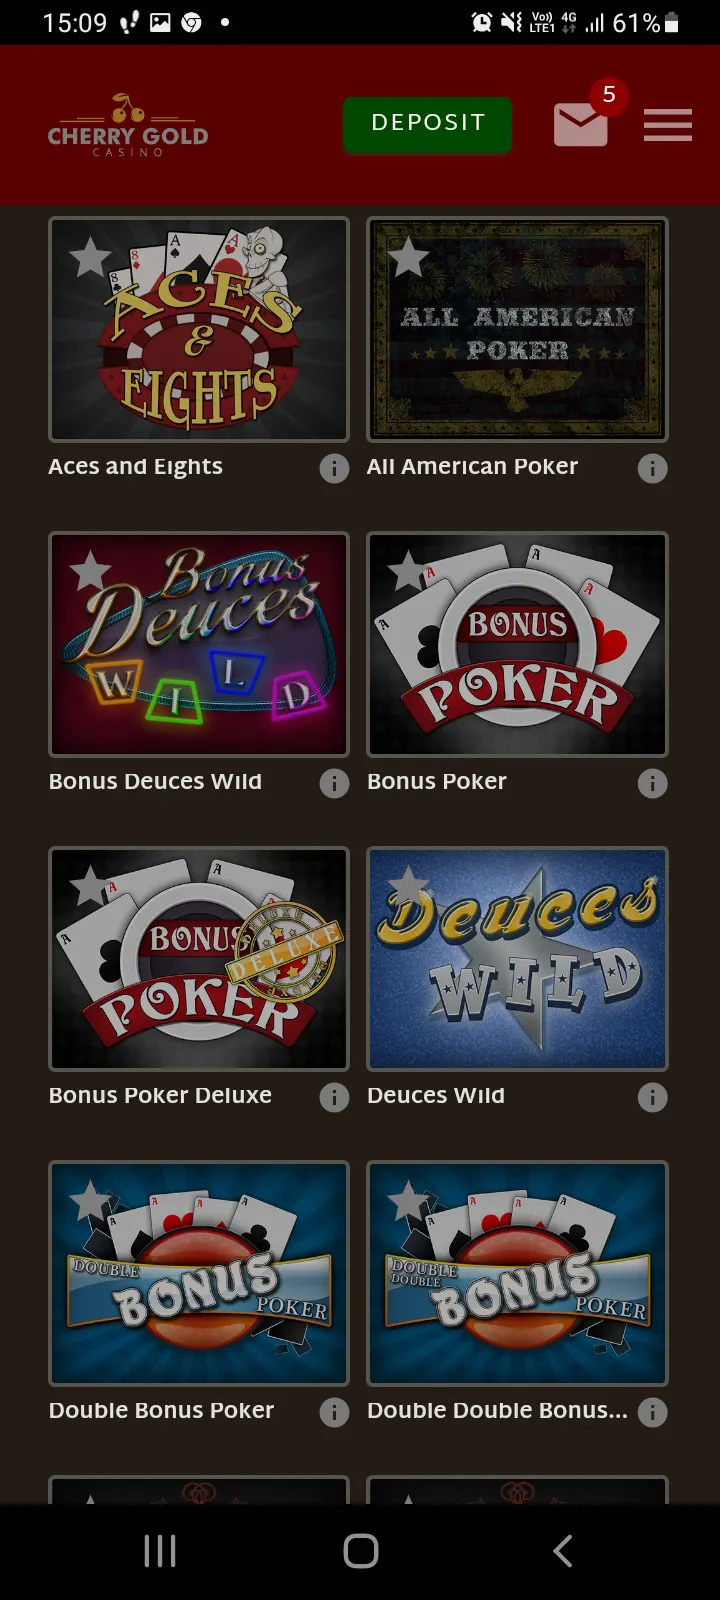 Cherry Gold casino app screenshot 7